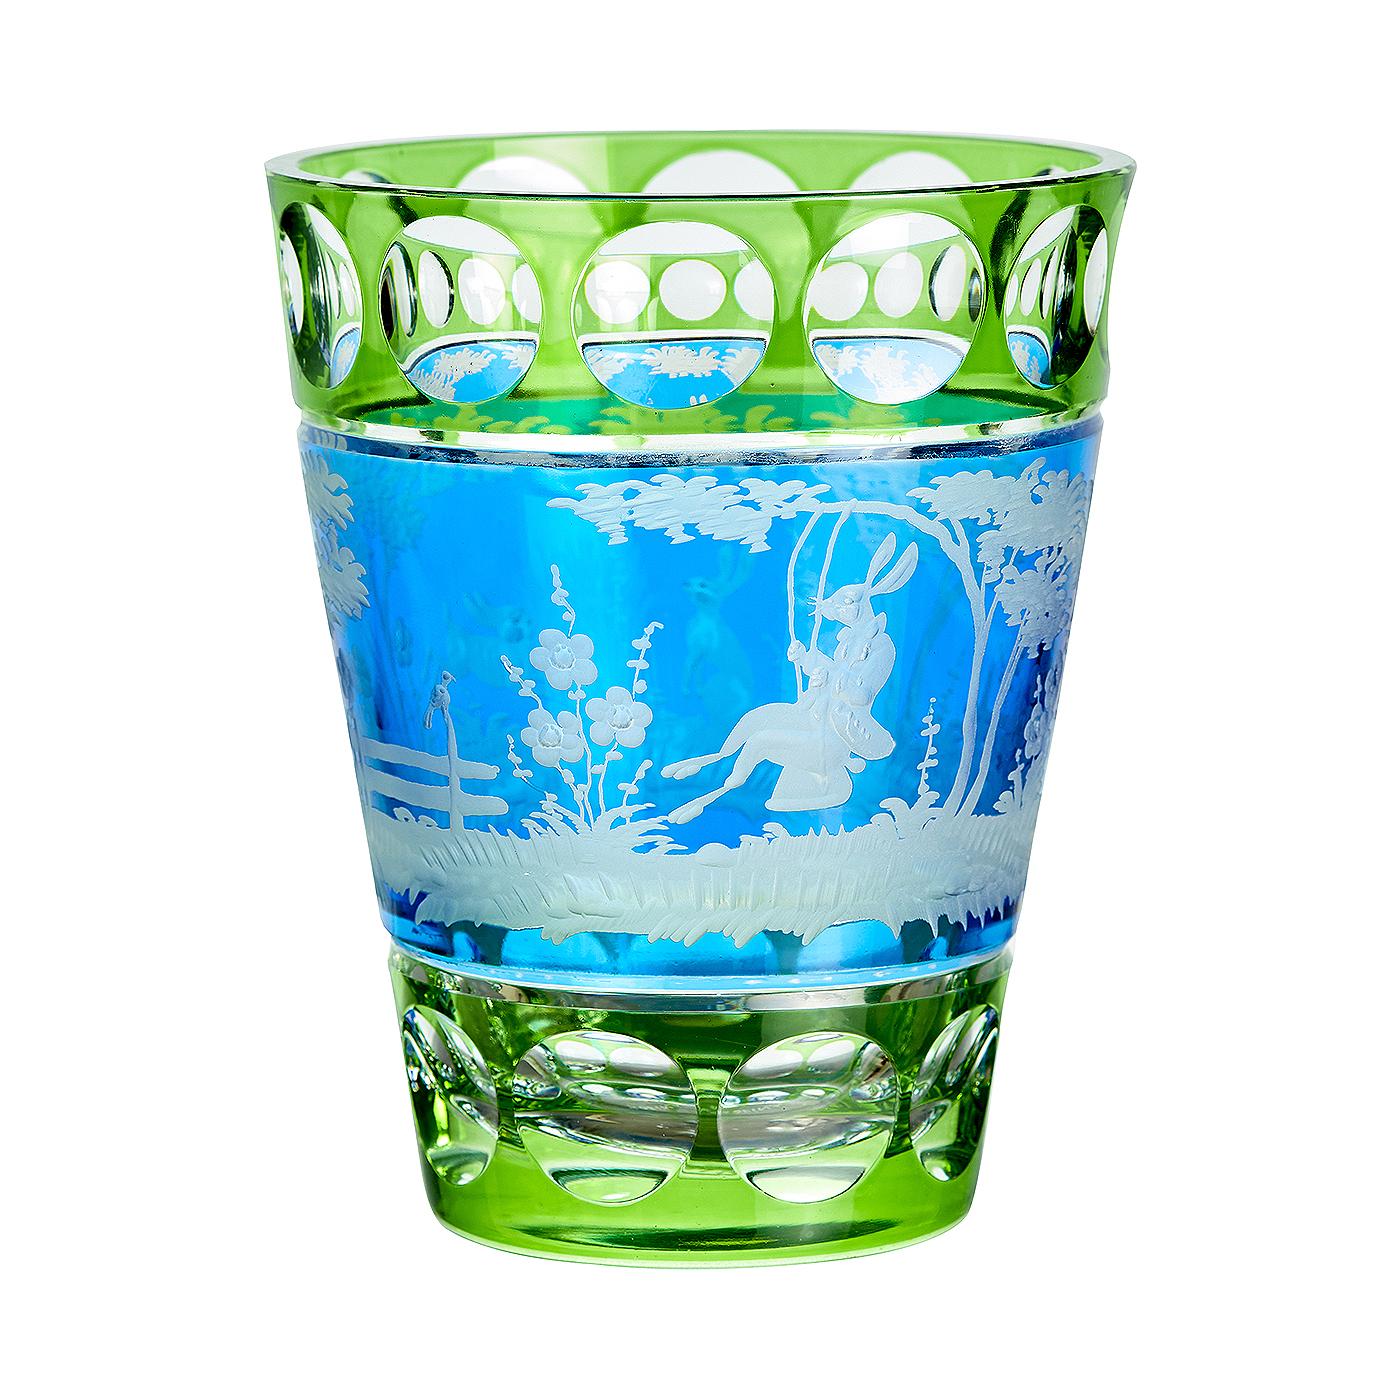 Vase en cristal soufflé à la main en verre vert et bleu avec une scène orientale vintage. Le décor est un décor de Pâques avec 2 lapins gravés à main levée dans un style naturaliste. Entièrement soufflé et gravé à la main en Bavière/Allemagne. Le